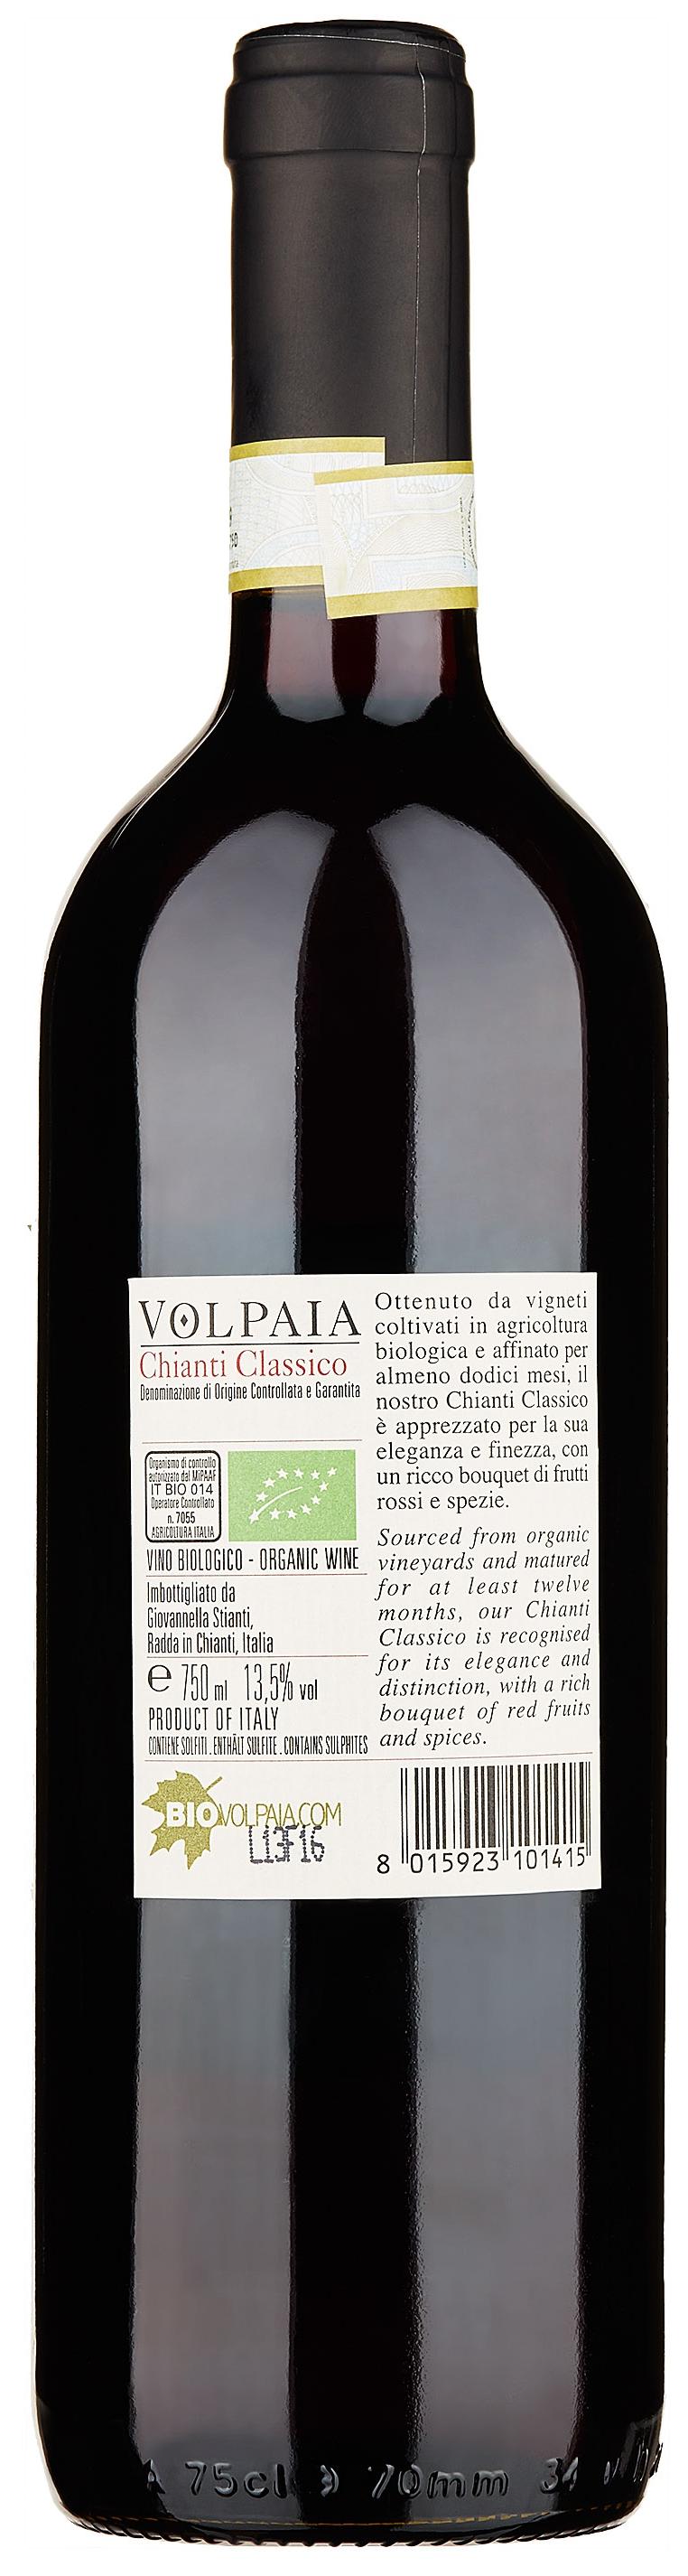 Castello di Volpaia Chianti Classico 2015 Set 6 bottles - 2